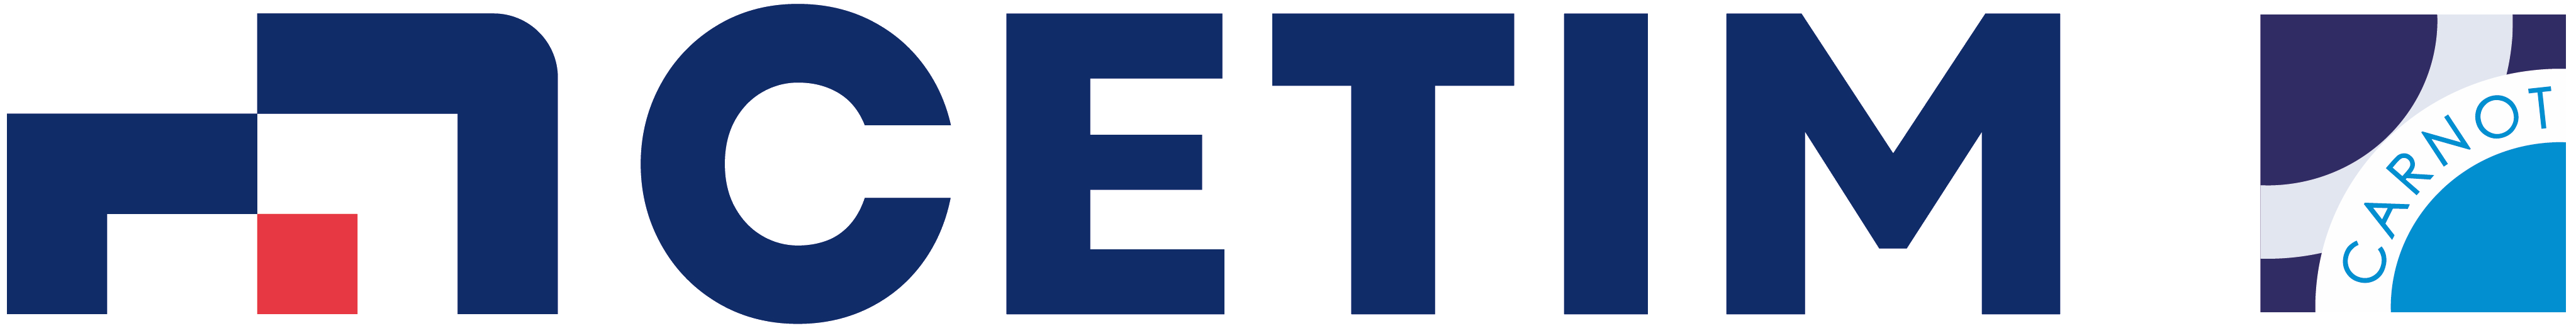 CETIM – Centre Technique des Industries de la Mécanique